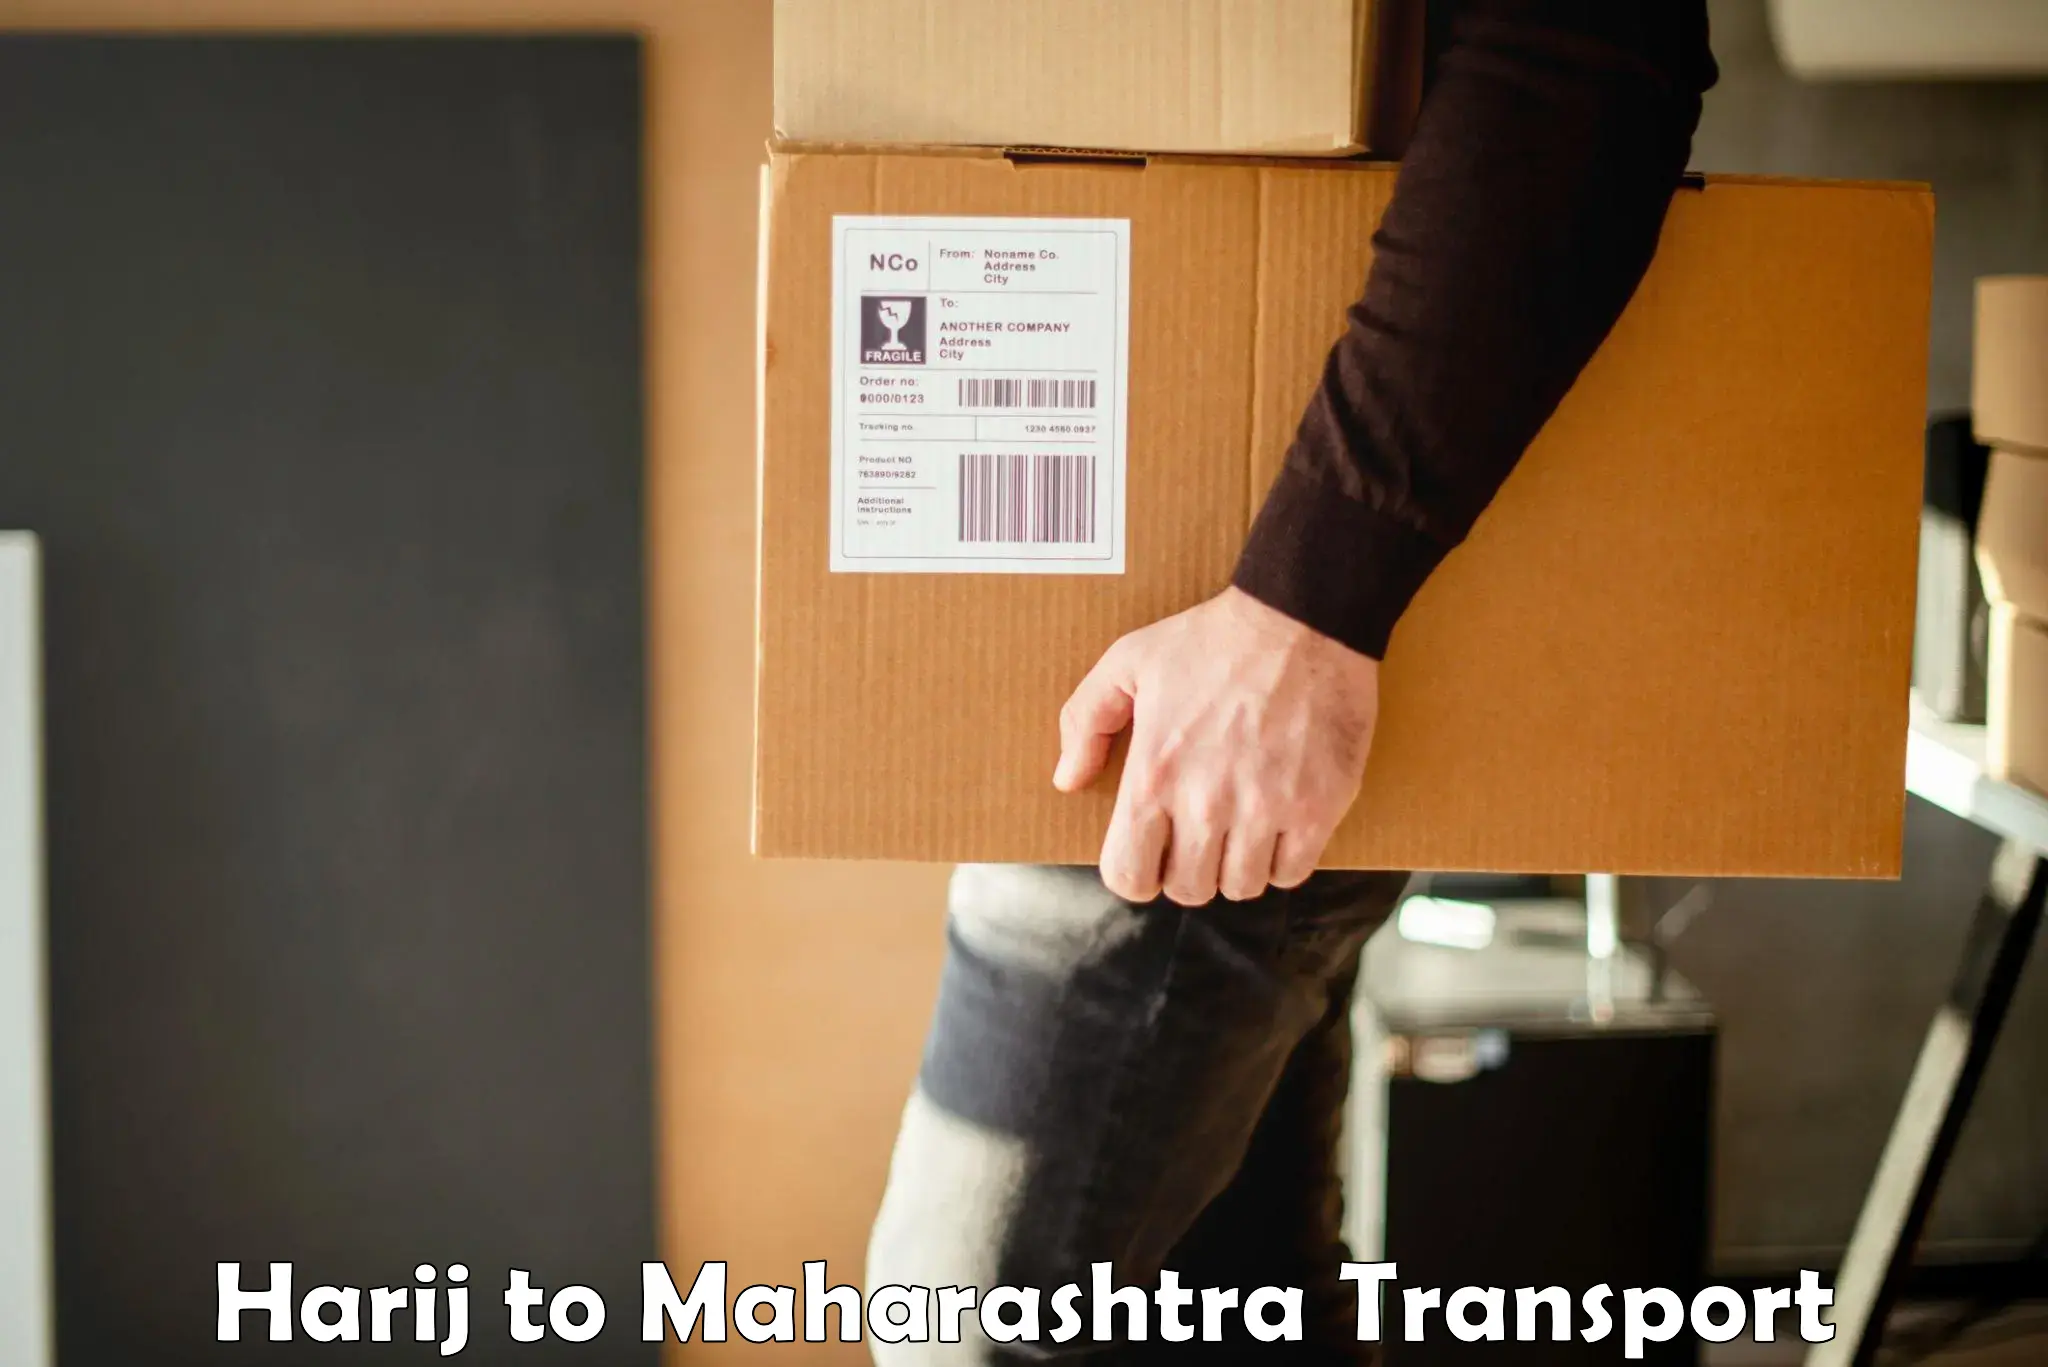 Furniture transport service Harij to Tata Institute of Social Sciences Mumbai